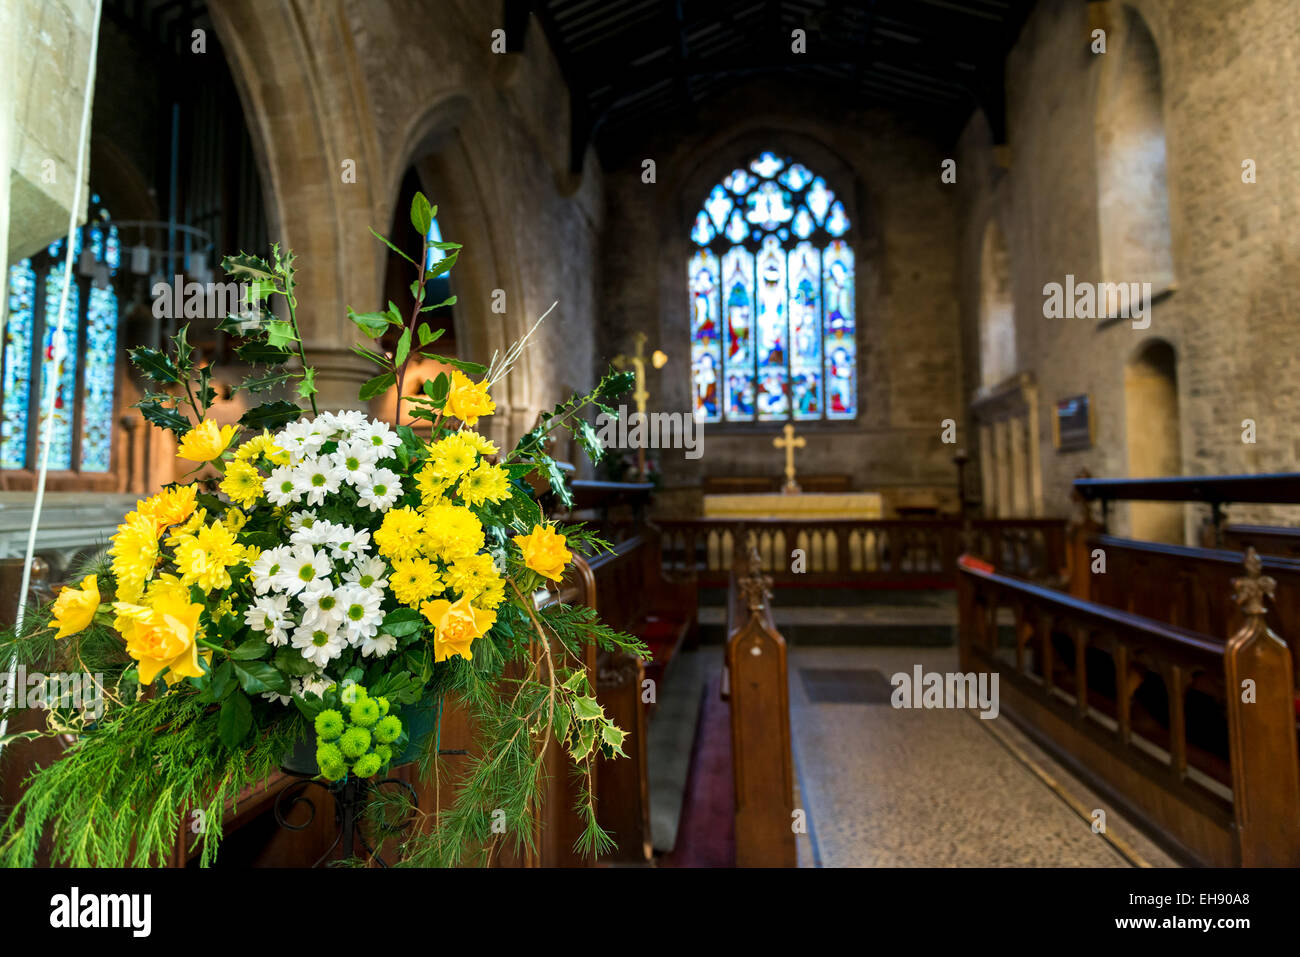 Les fleurs de printemps dans l'église de St Mary's, une église anglicane dans le Oxfordshire ville de Chipping Norton Banque D'Images